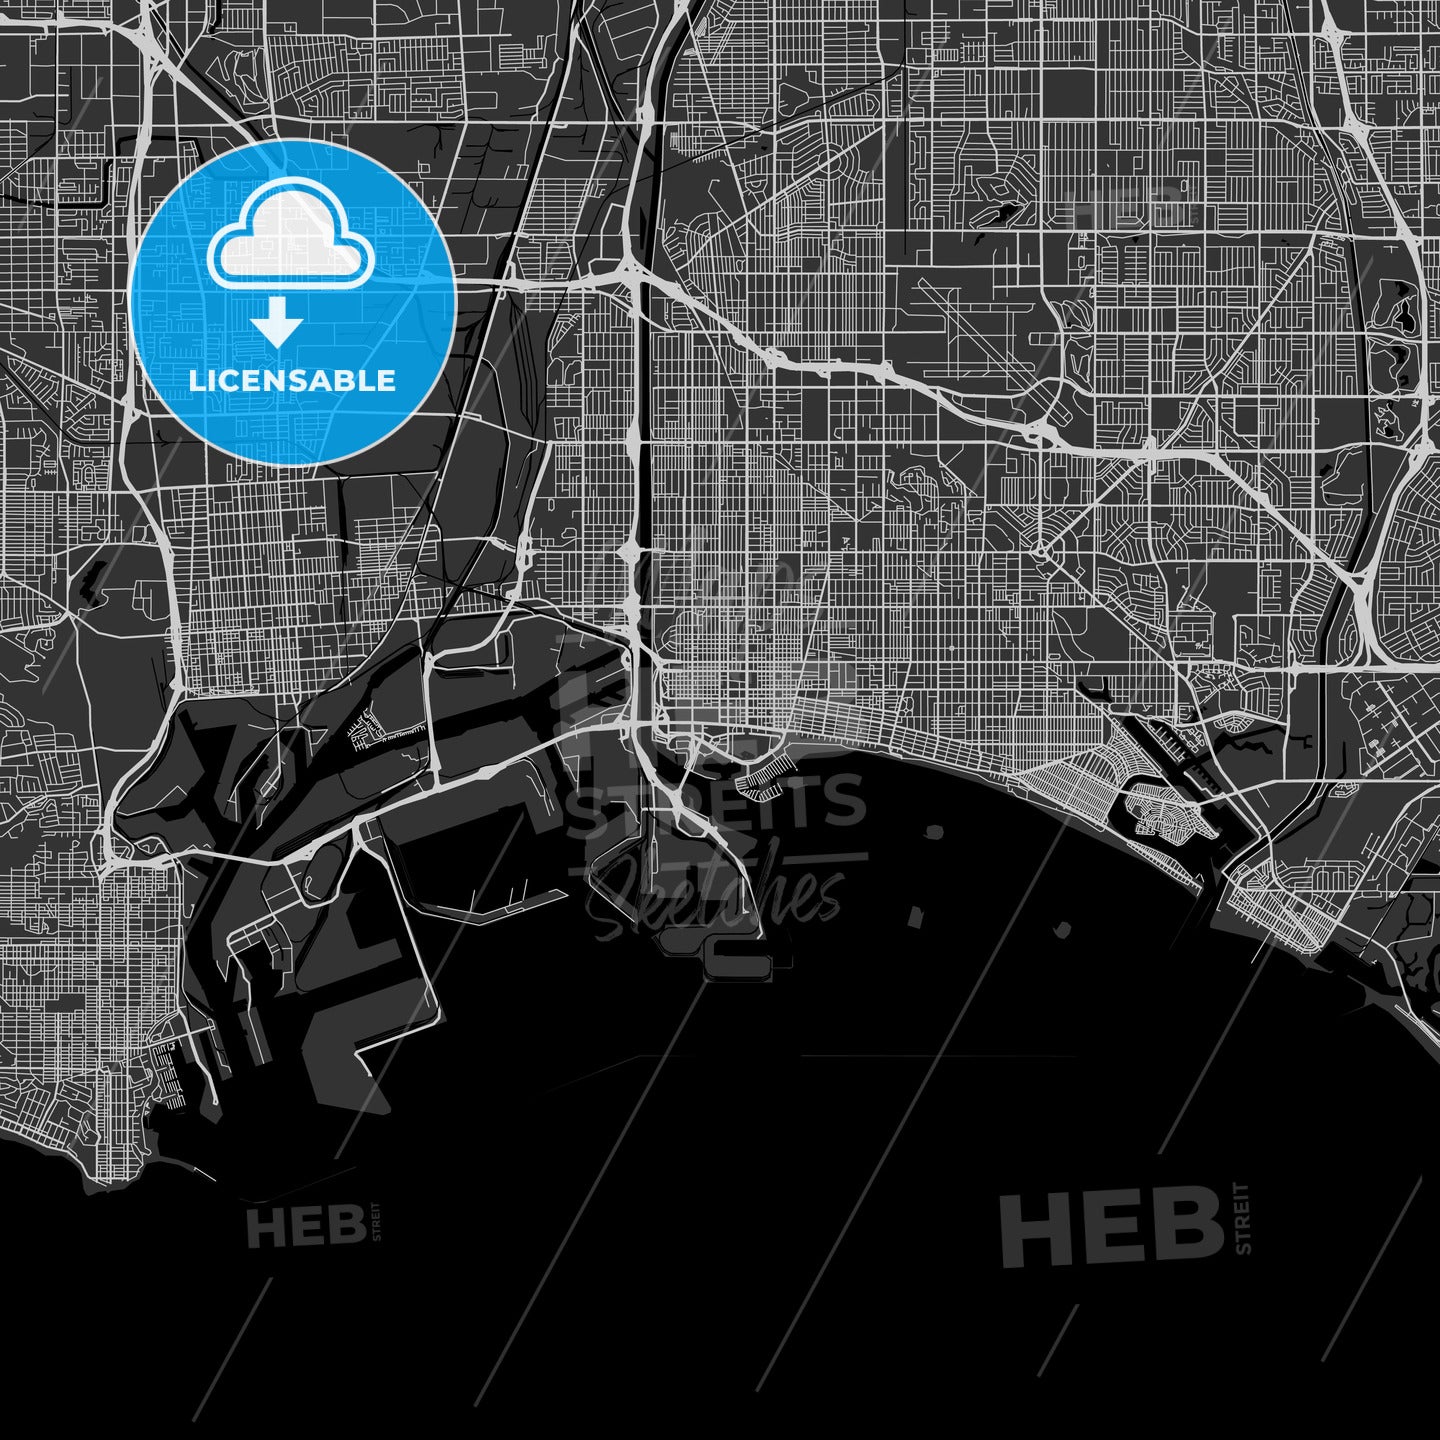 Long Beach, California - Area Map - Dark